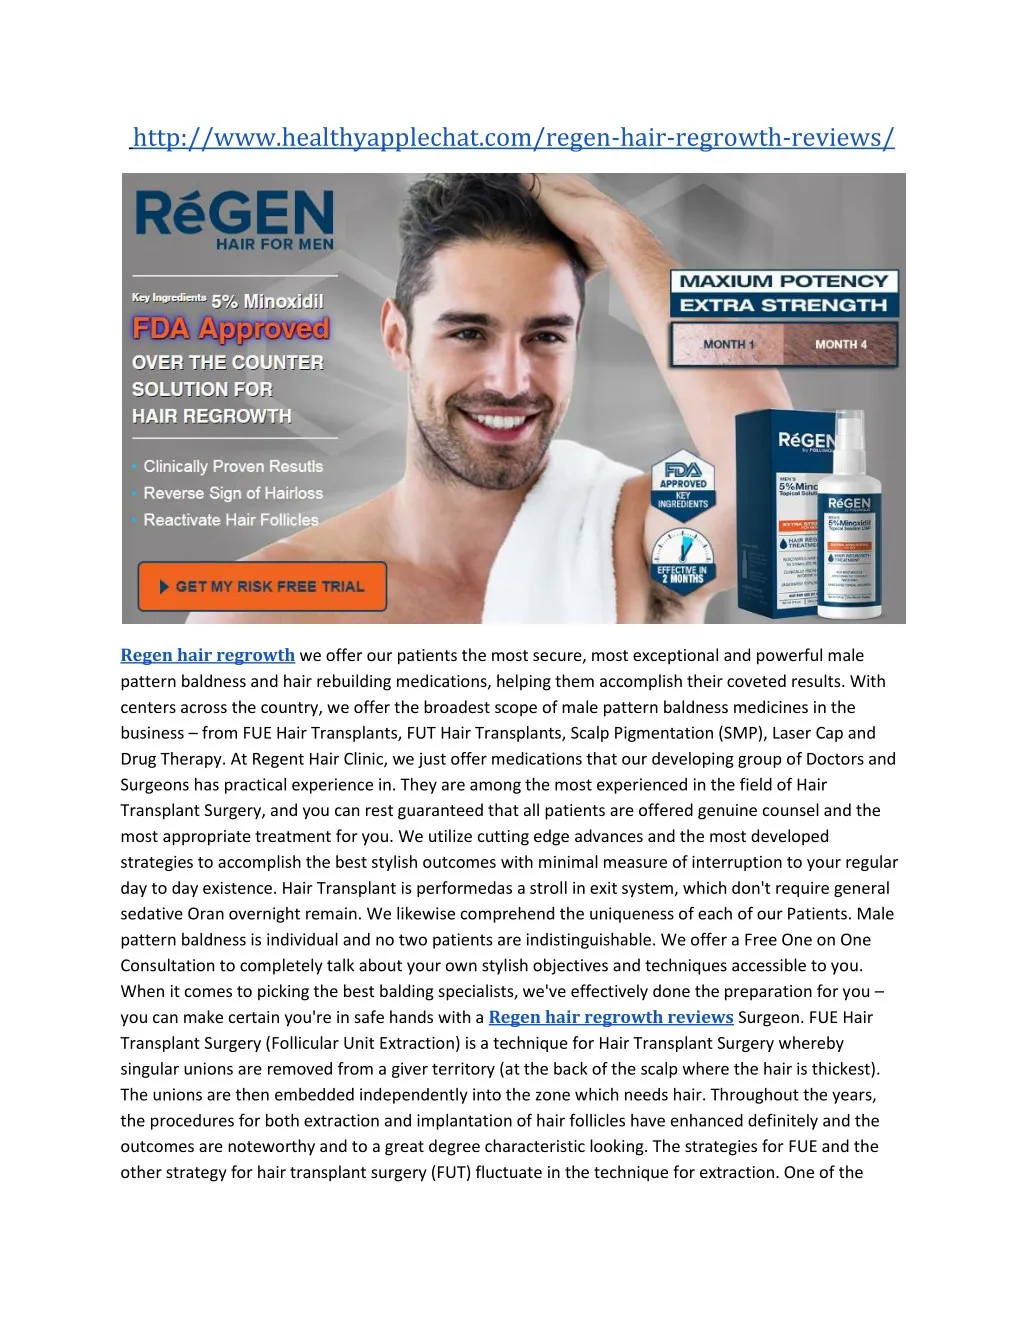 http www healthyapplechat com regen hair regrowth